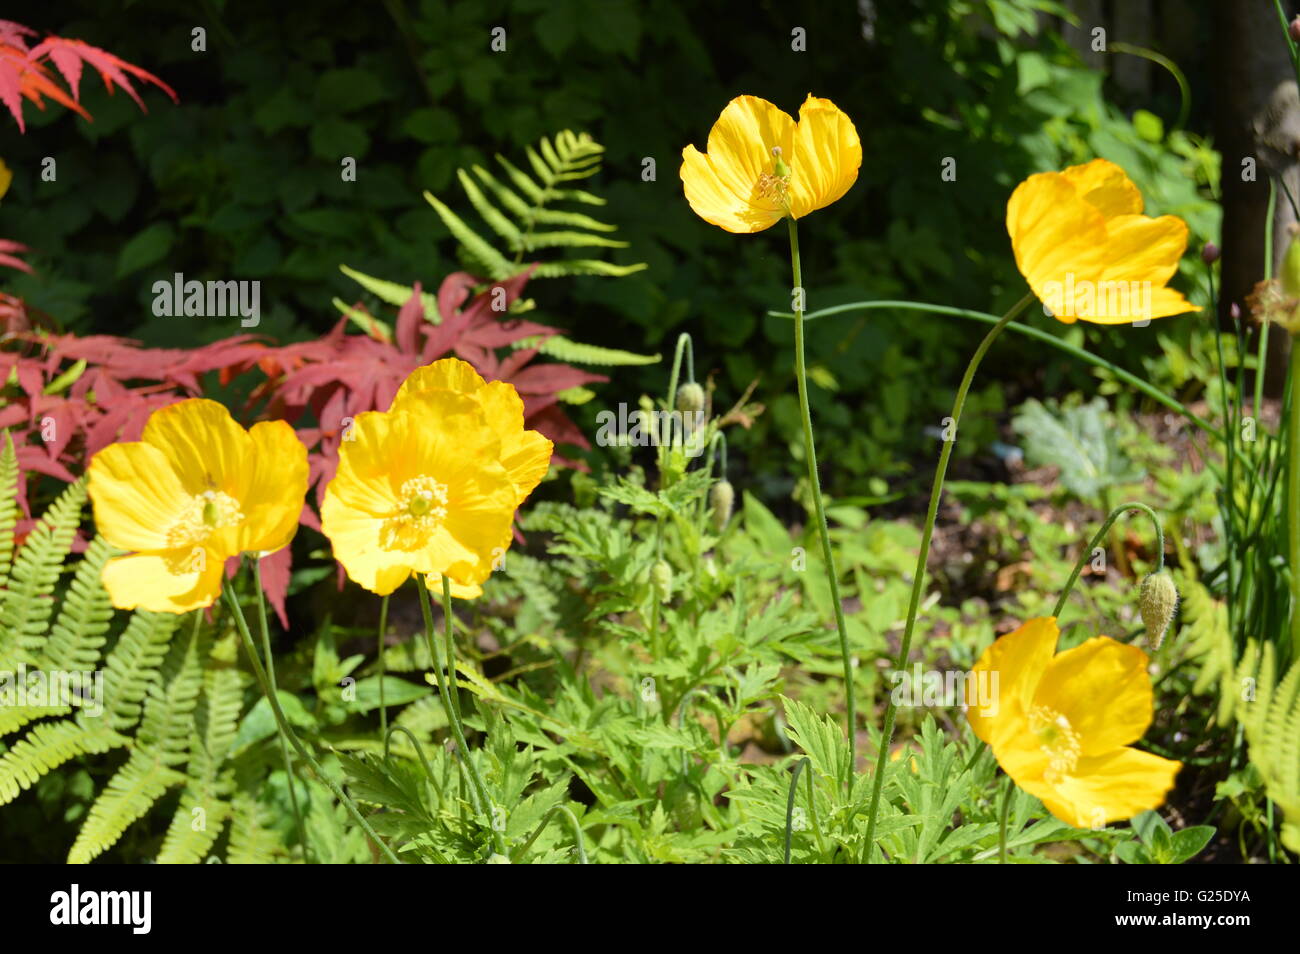 Die Waliser Mohnblume ist eine mehrjährige blühende Pflanze in der Mohn-Familie Papaveraceae. Meconopsis cambrica Stockfoto